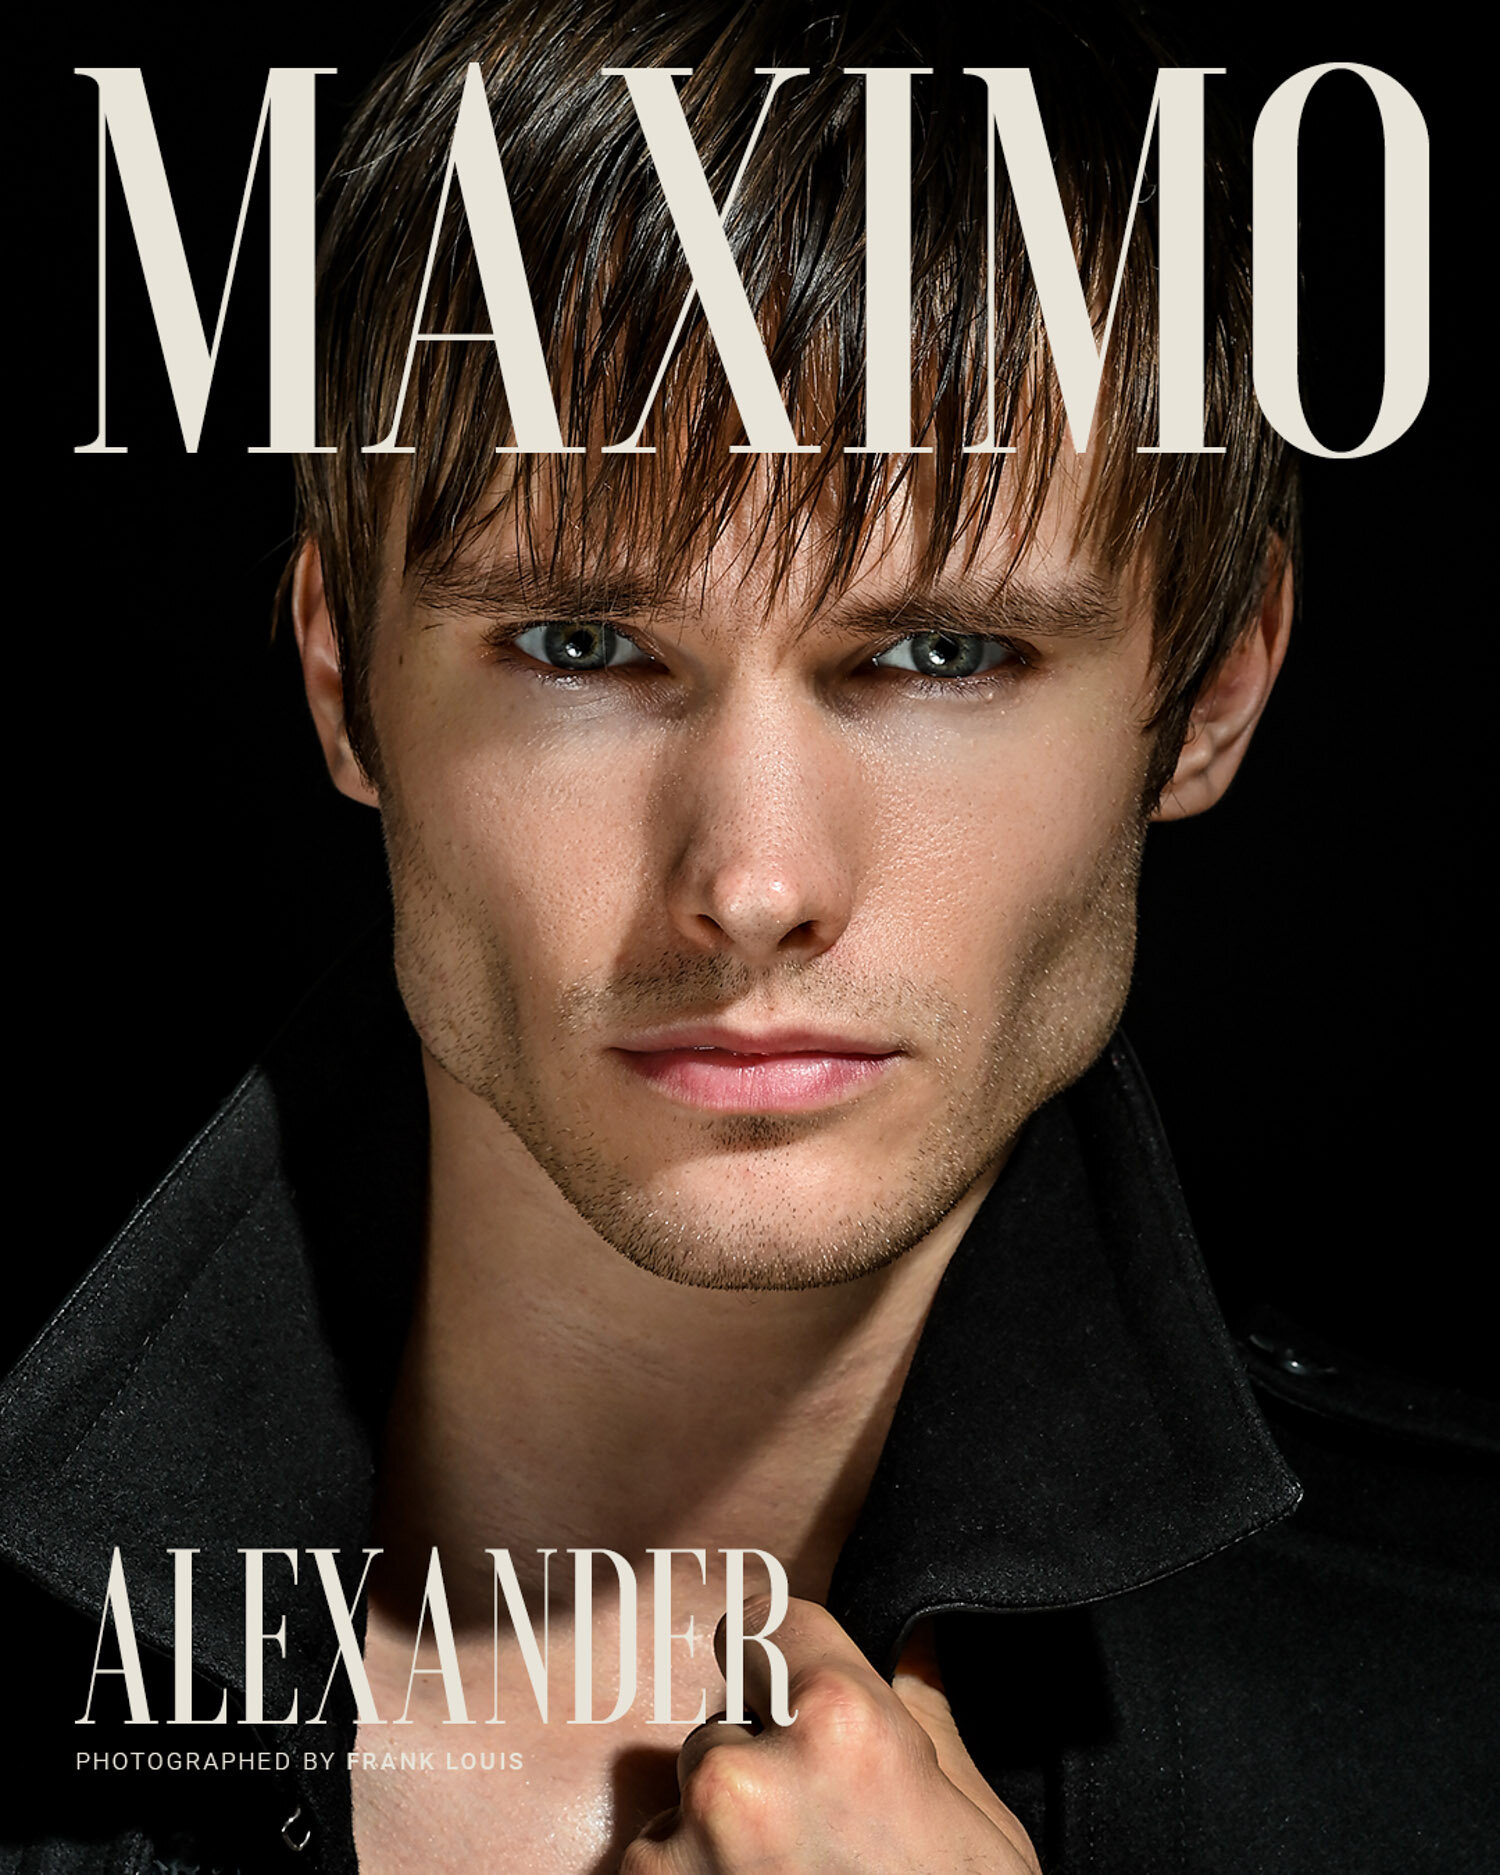 Alexander+by+Frank+Louis.jpg